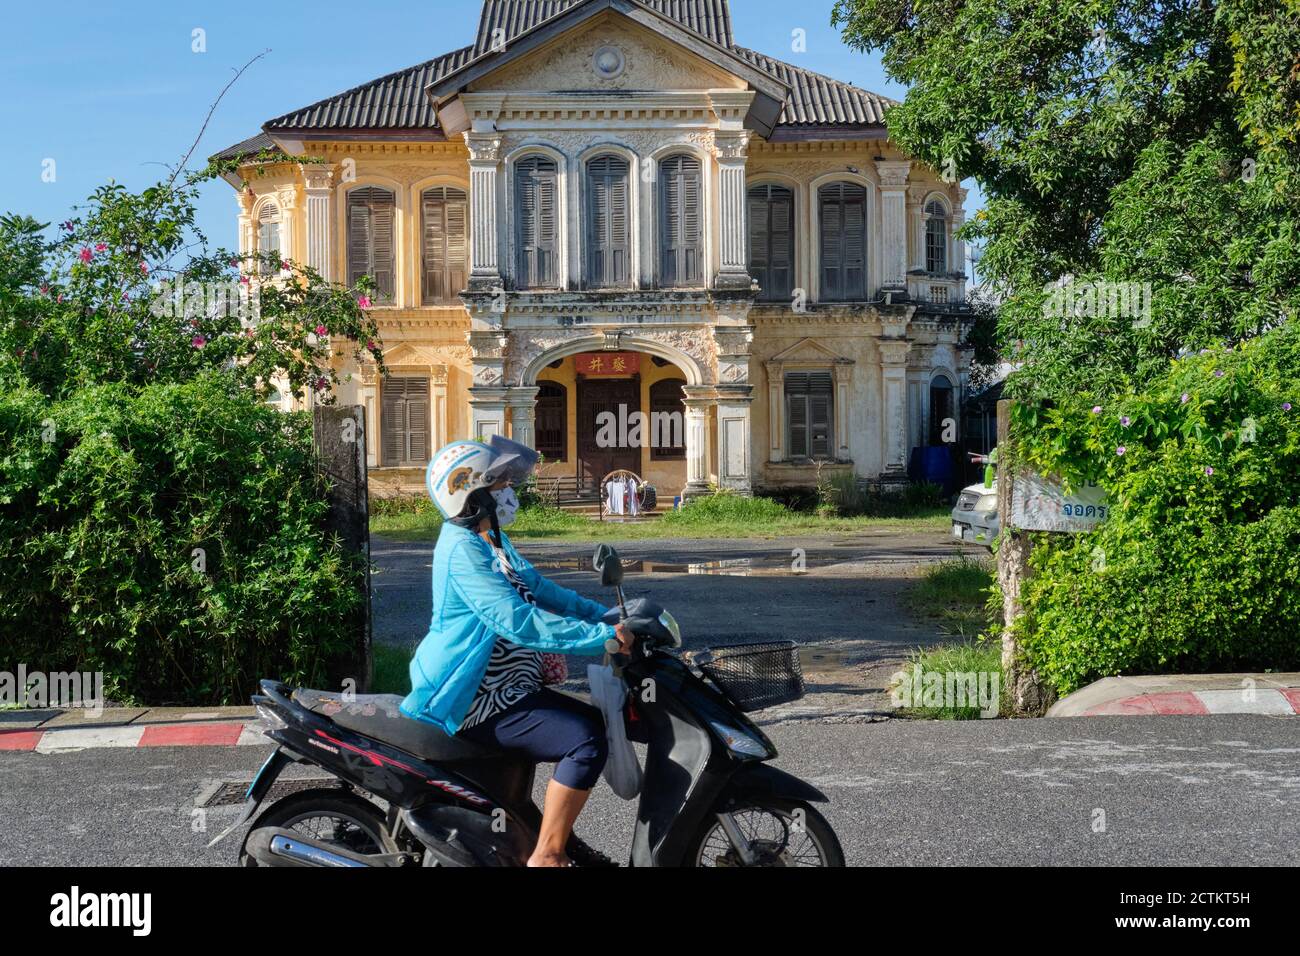 Un motocycliste passe devant une vieille villa chinoise ou de style peranakan ; Krabi Road dans la vieille ville (Chinatown) de Phuket Town, Thaïlande Banque D'Images